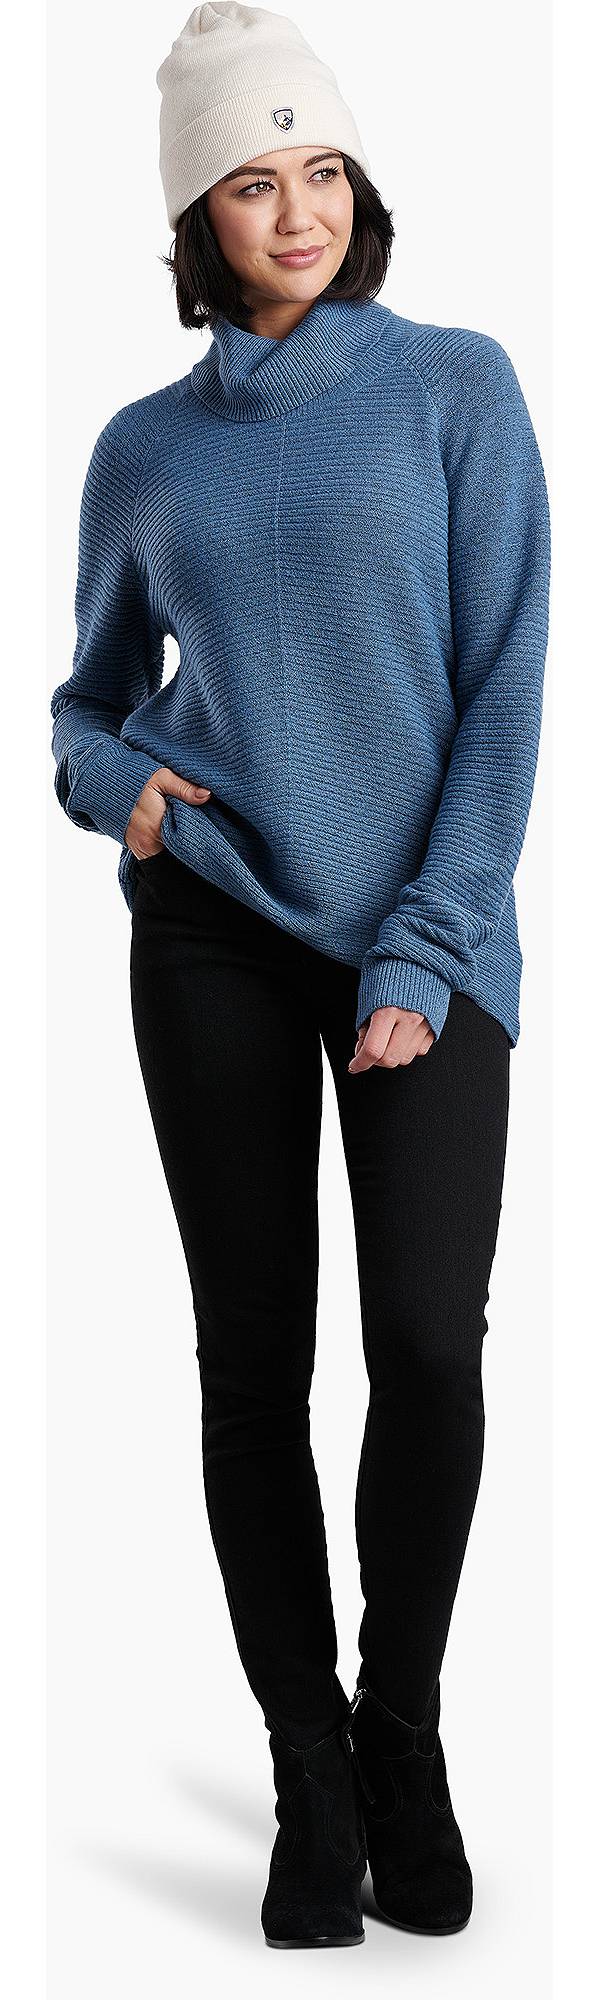 KÜHL Women's Solace Sweater